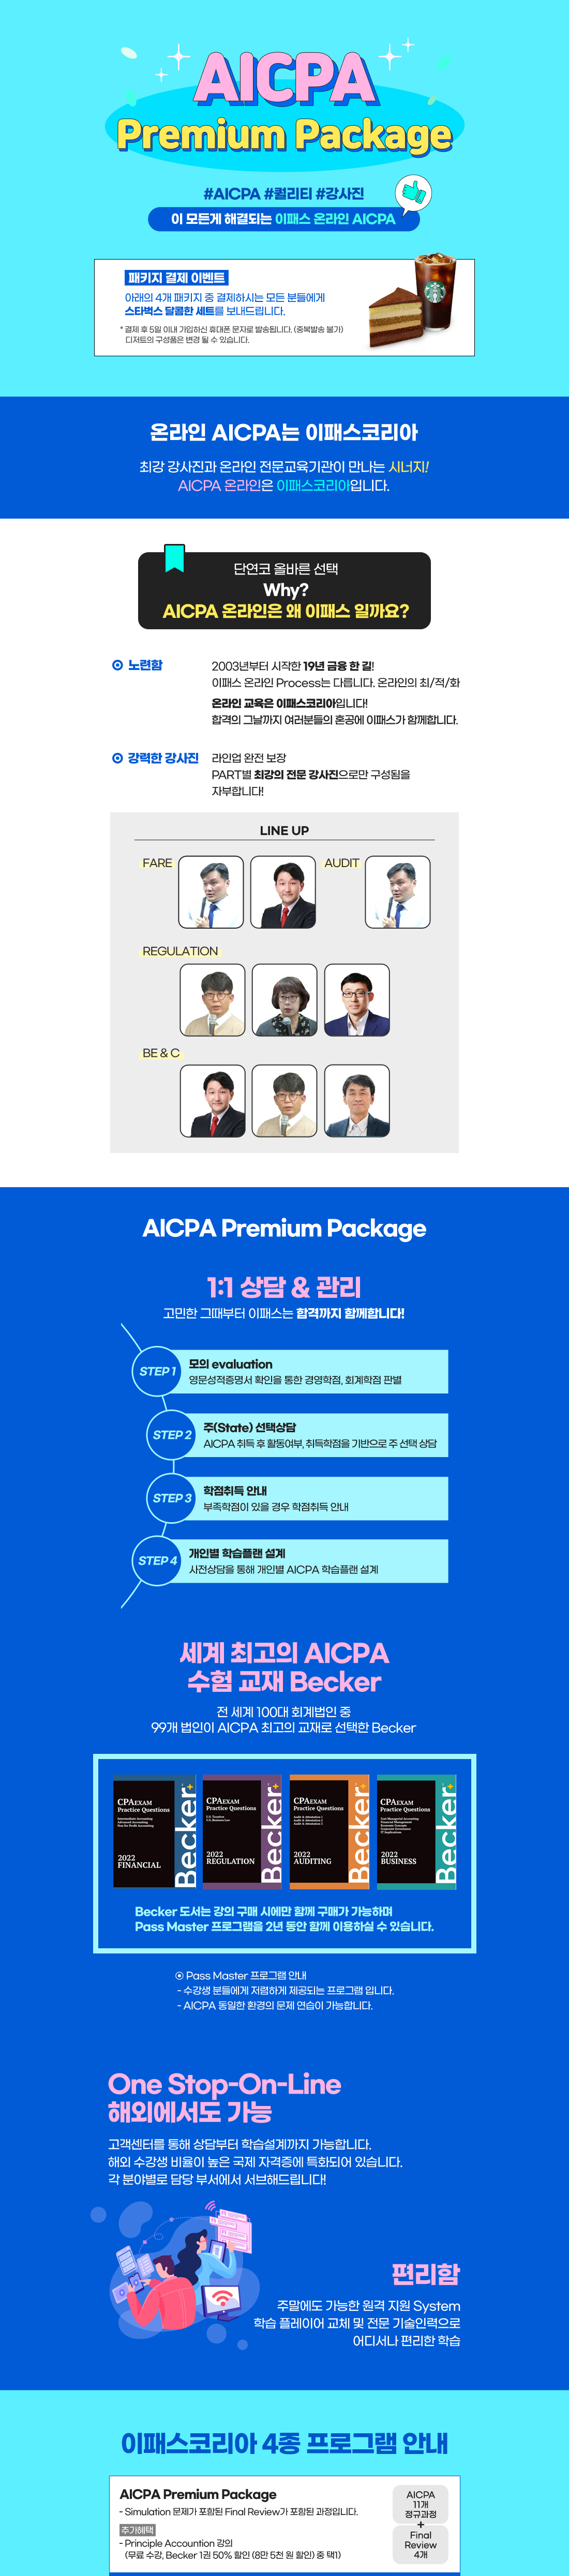 AICPA Premium Package